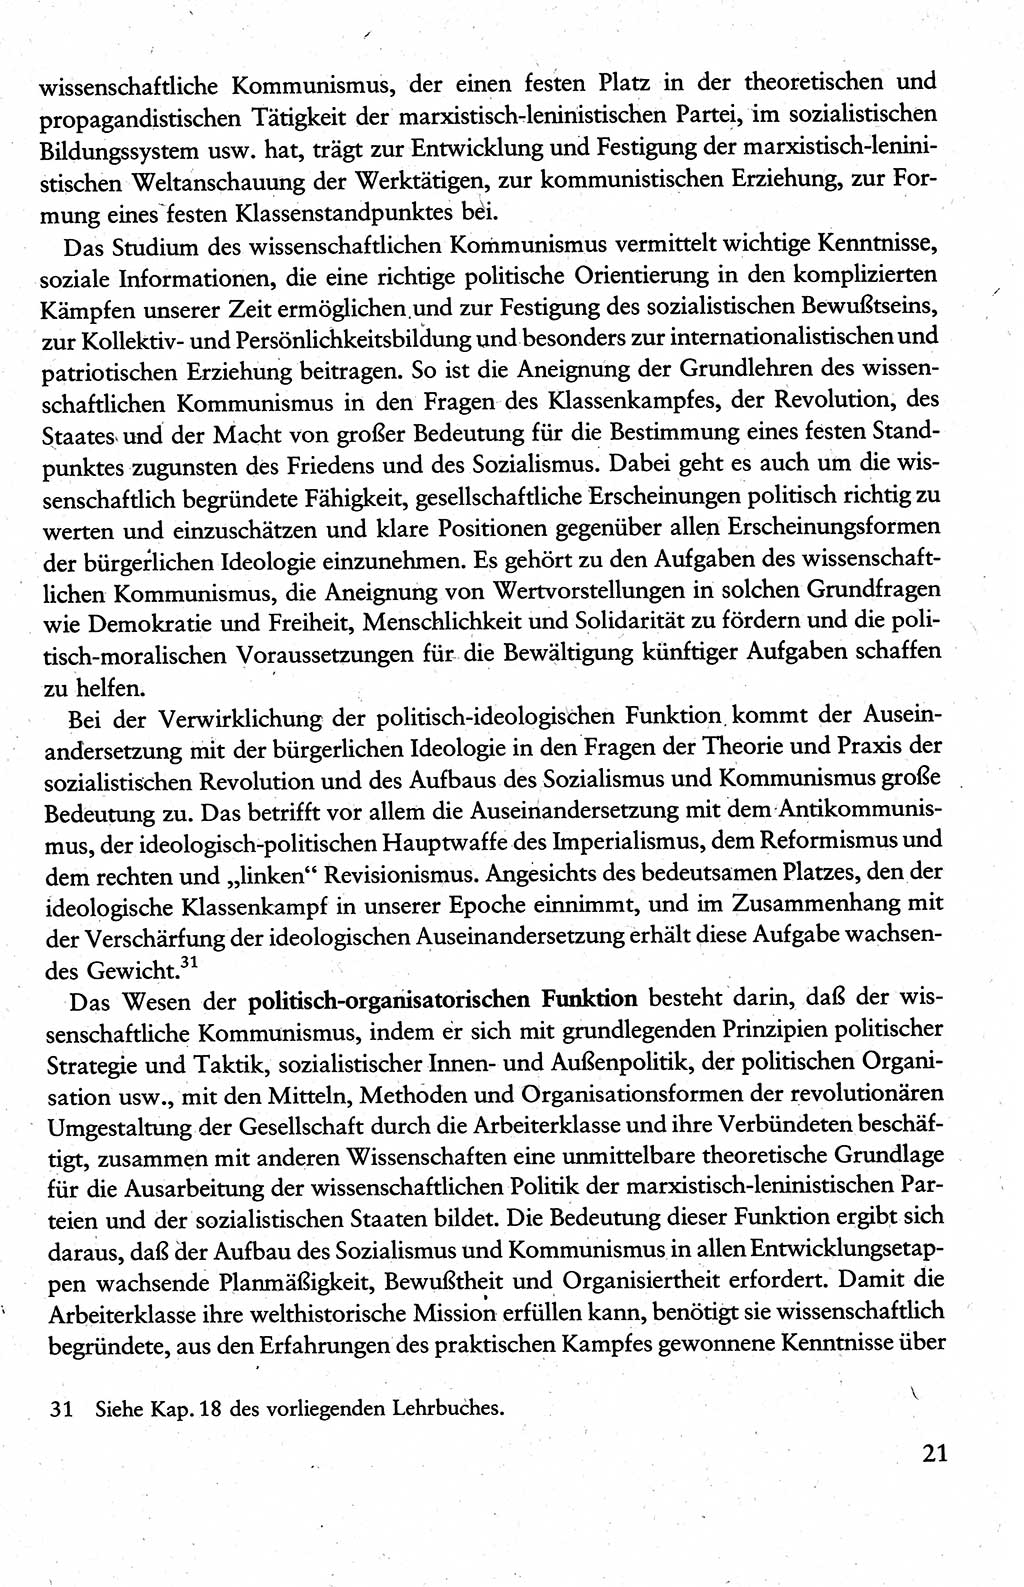 Wissenschaftlicher Kommunismus [Deutsche Demokratische Republik (DDR)], Lehrbuch für das marxistisch-leninistische Grundlagenstudium 1983, Seite 21 (Wiss. Komm. DDR Lb. 1983, S. 21)